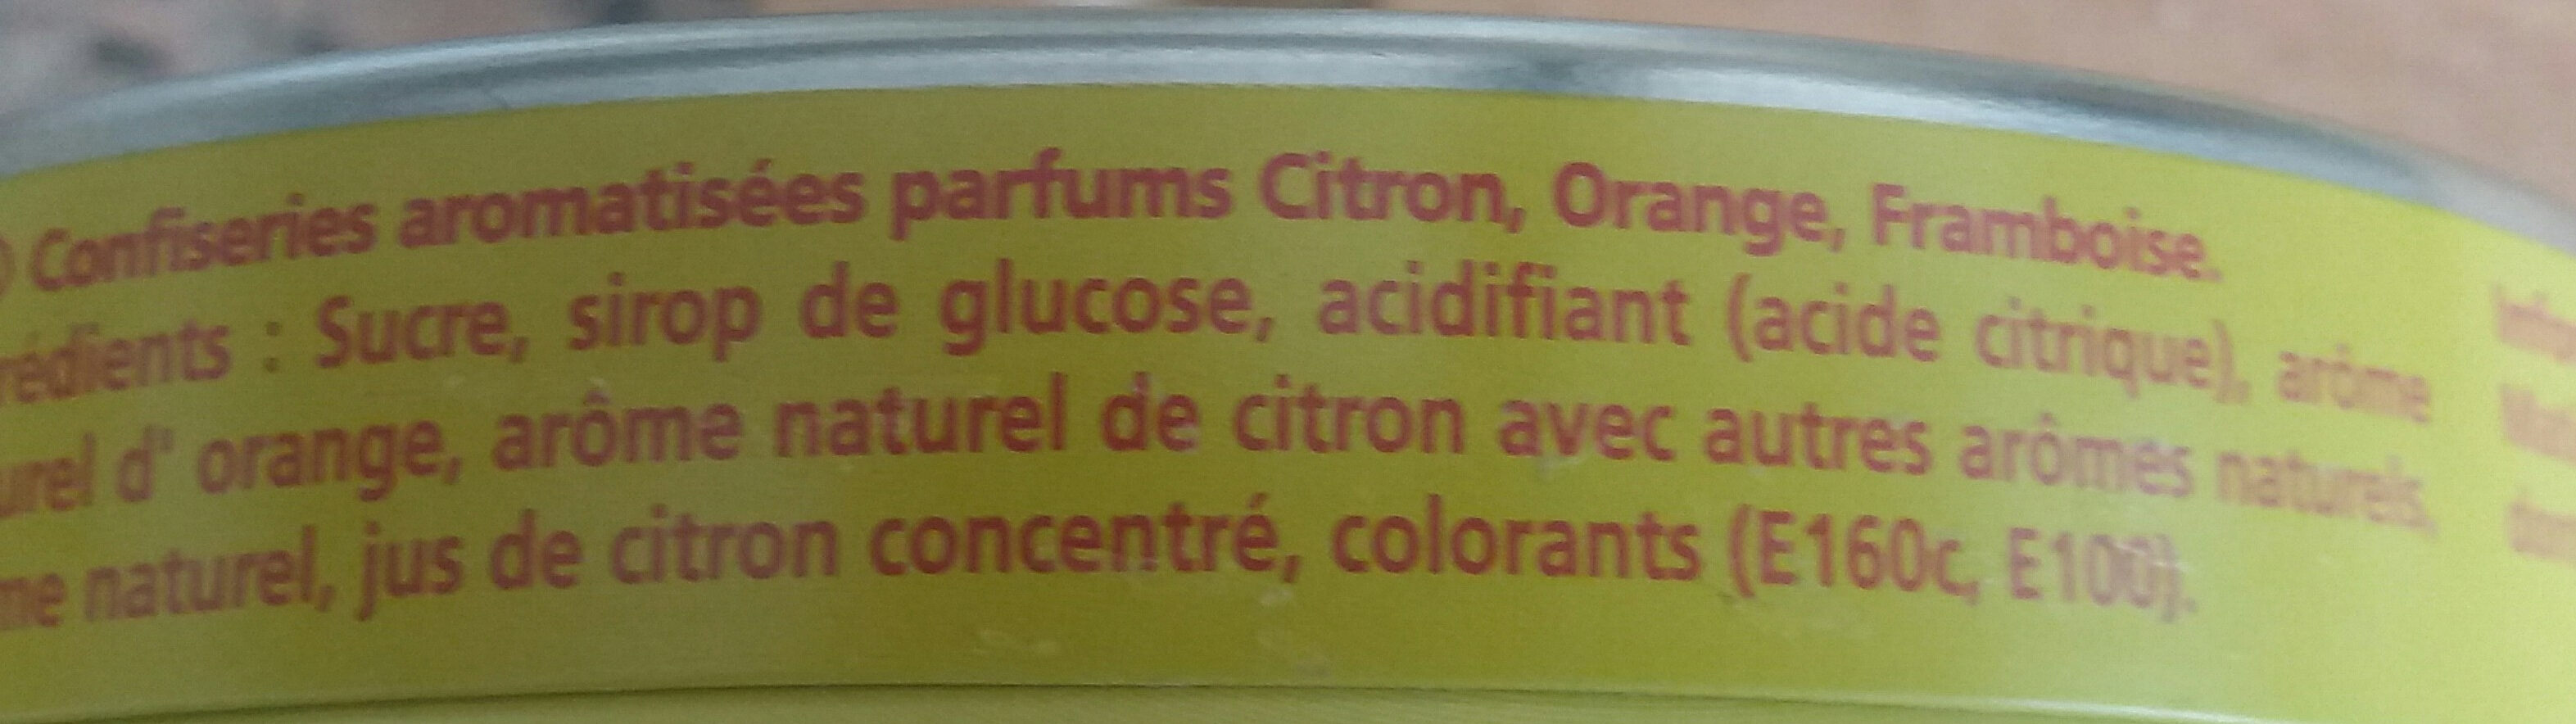 Confiseries aromatisées - Ingredients - fr